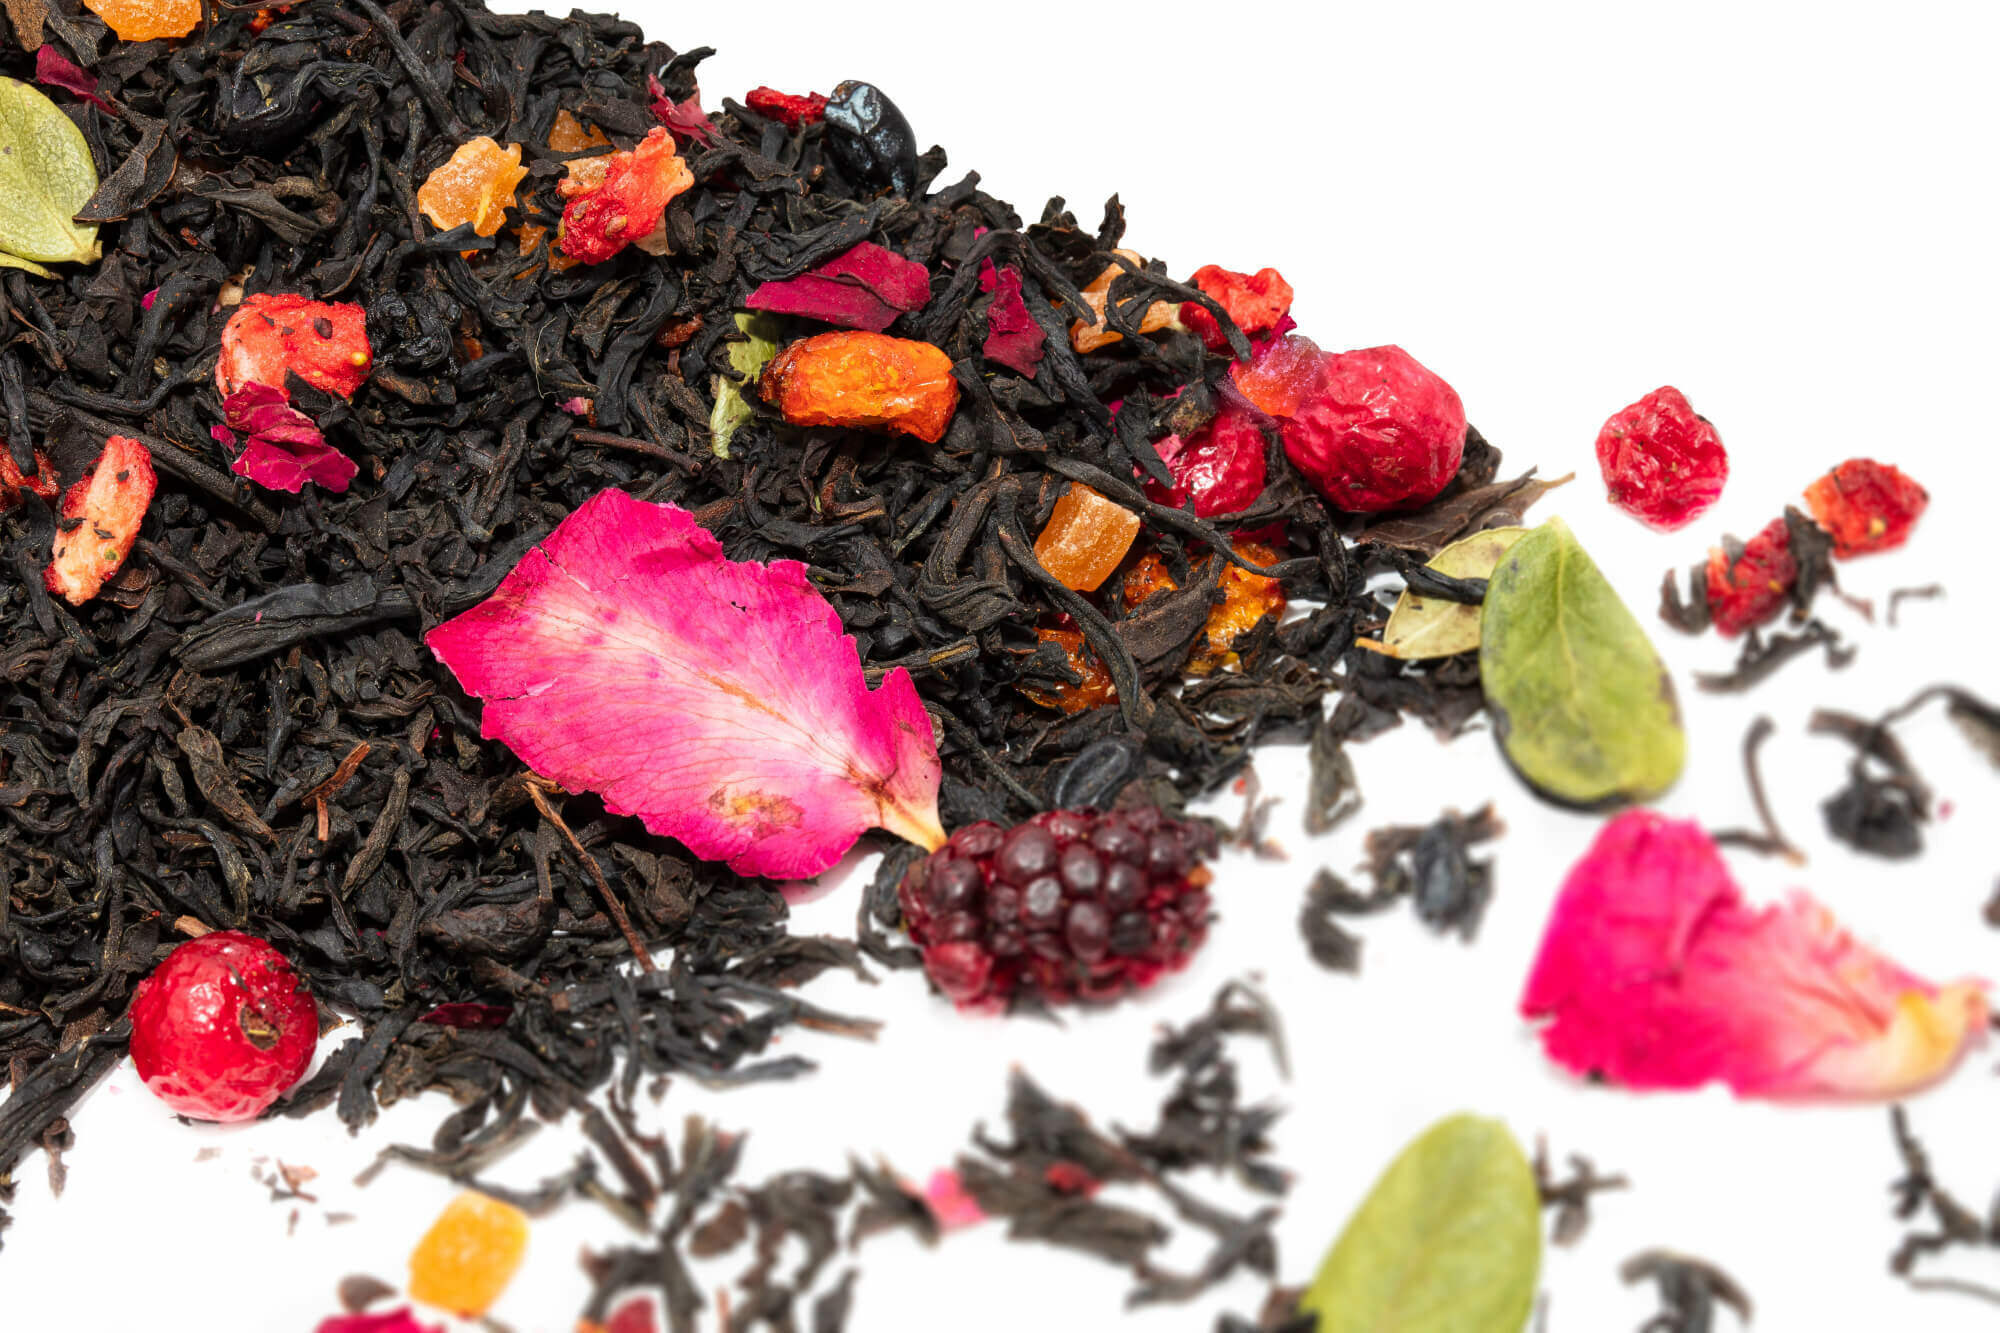 Императорский чай WEISERHOUSE, 100 г, черный цейлонский чай с добавлением кусочков манго и клубники, ягод барбариса, брусники, облепихи, черной смородины и ежевики